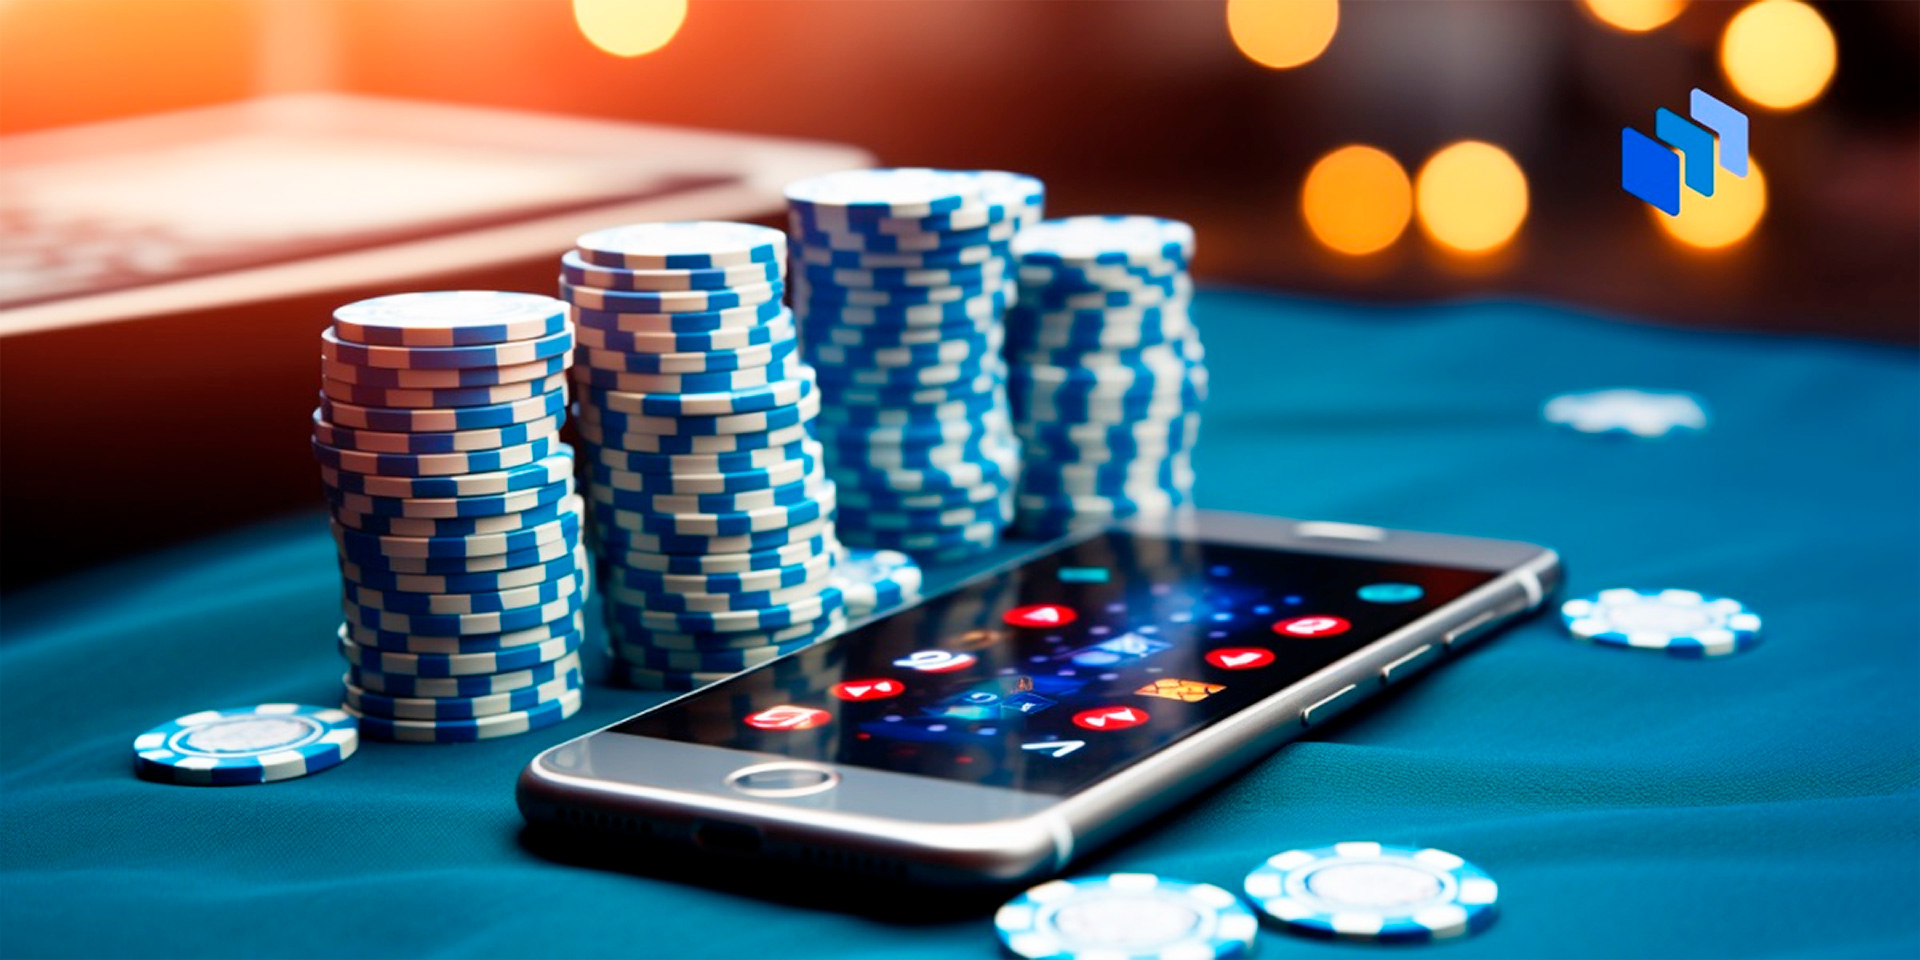 Casino on smartphone